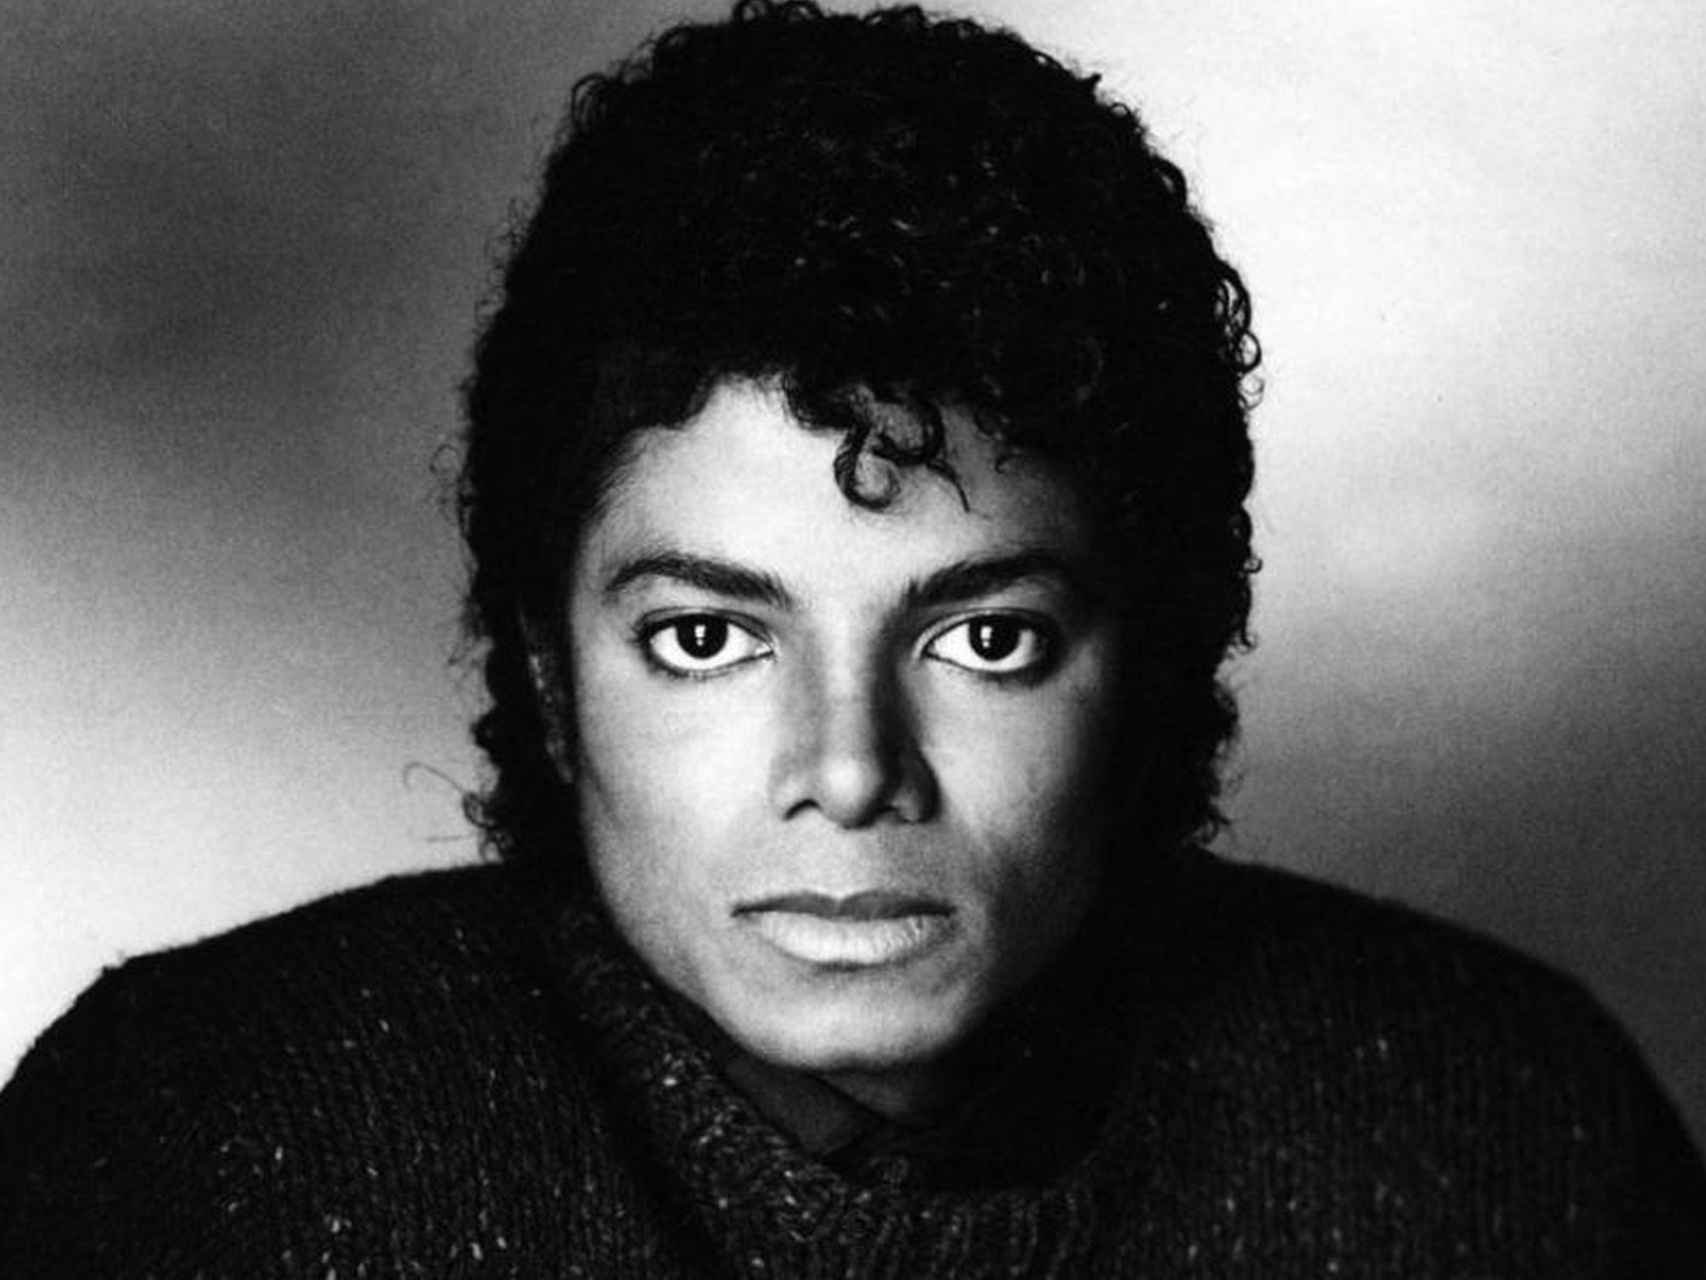 Michael Jackson antes de las acusaciones de violación a menores.